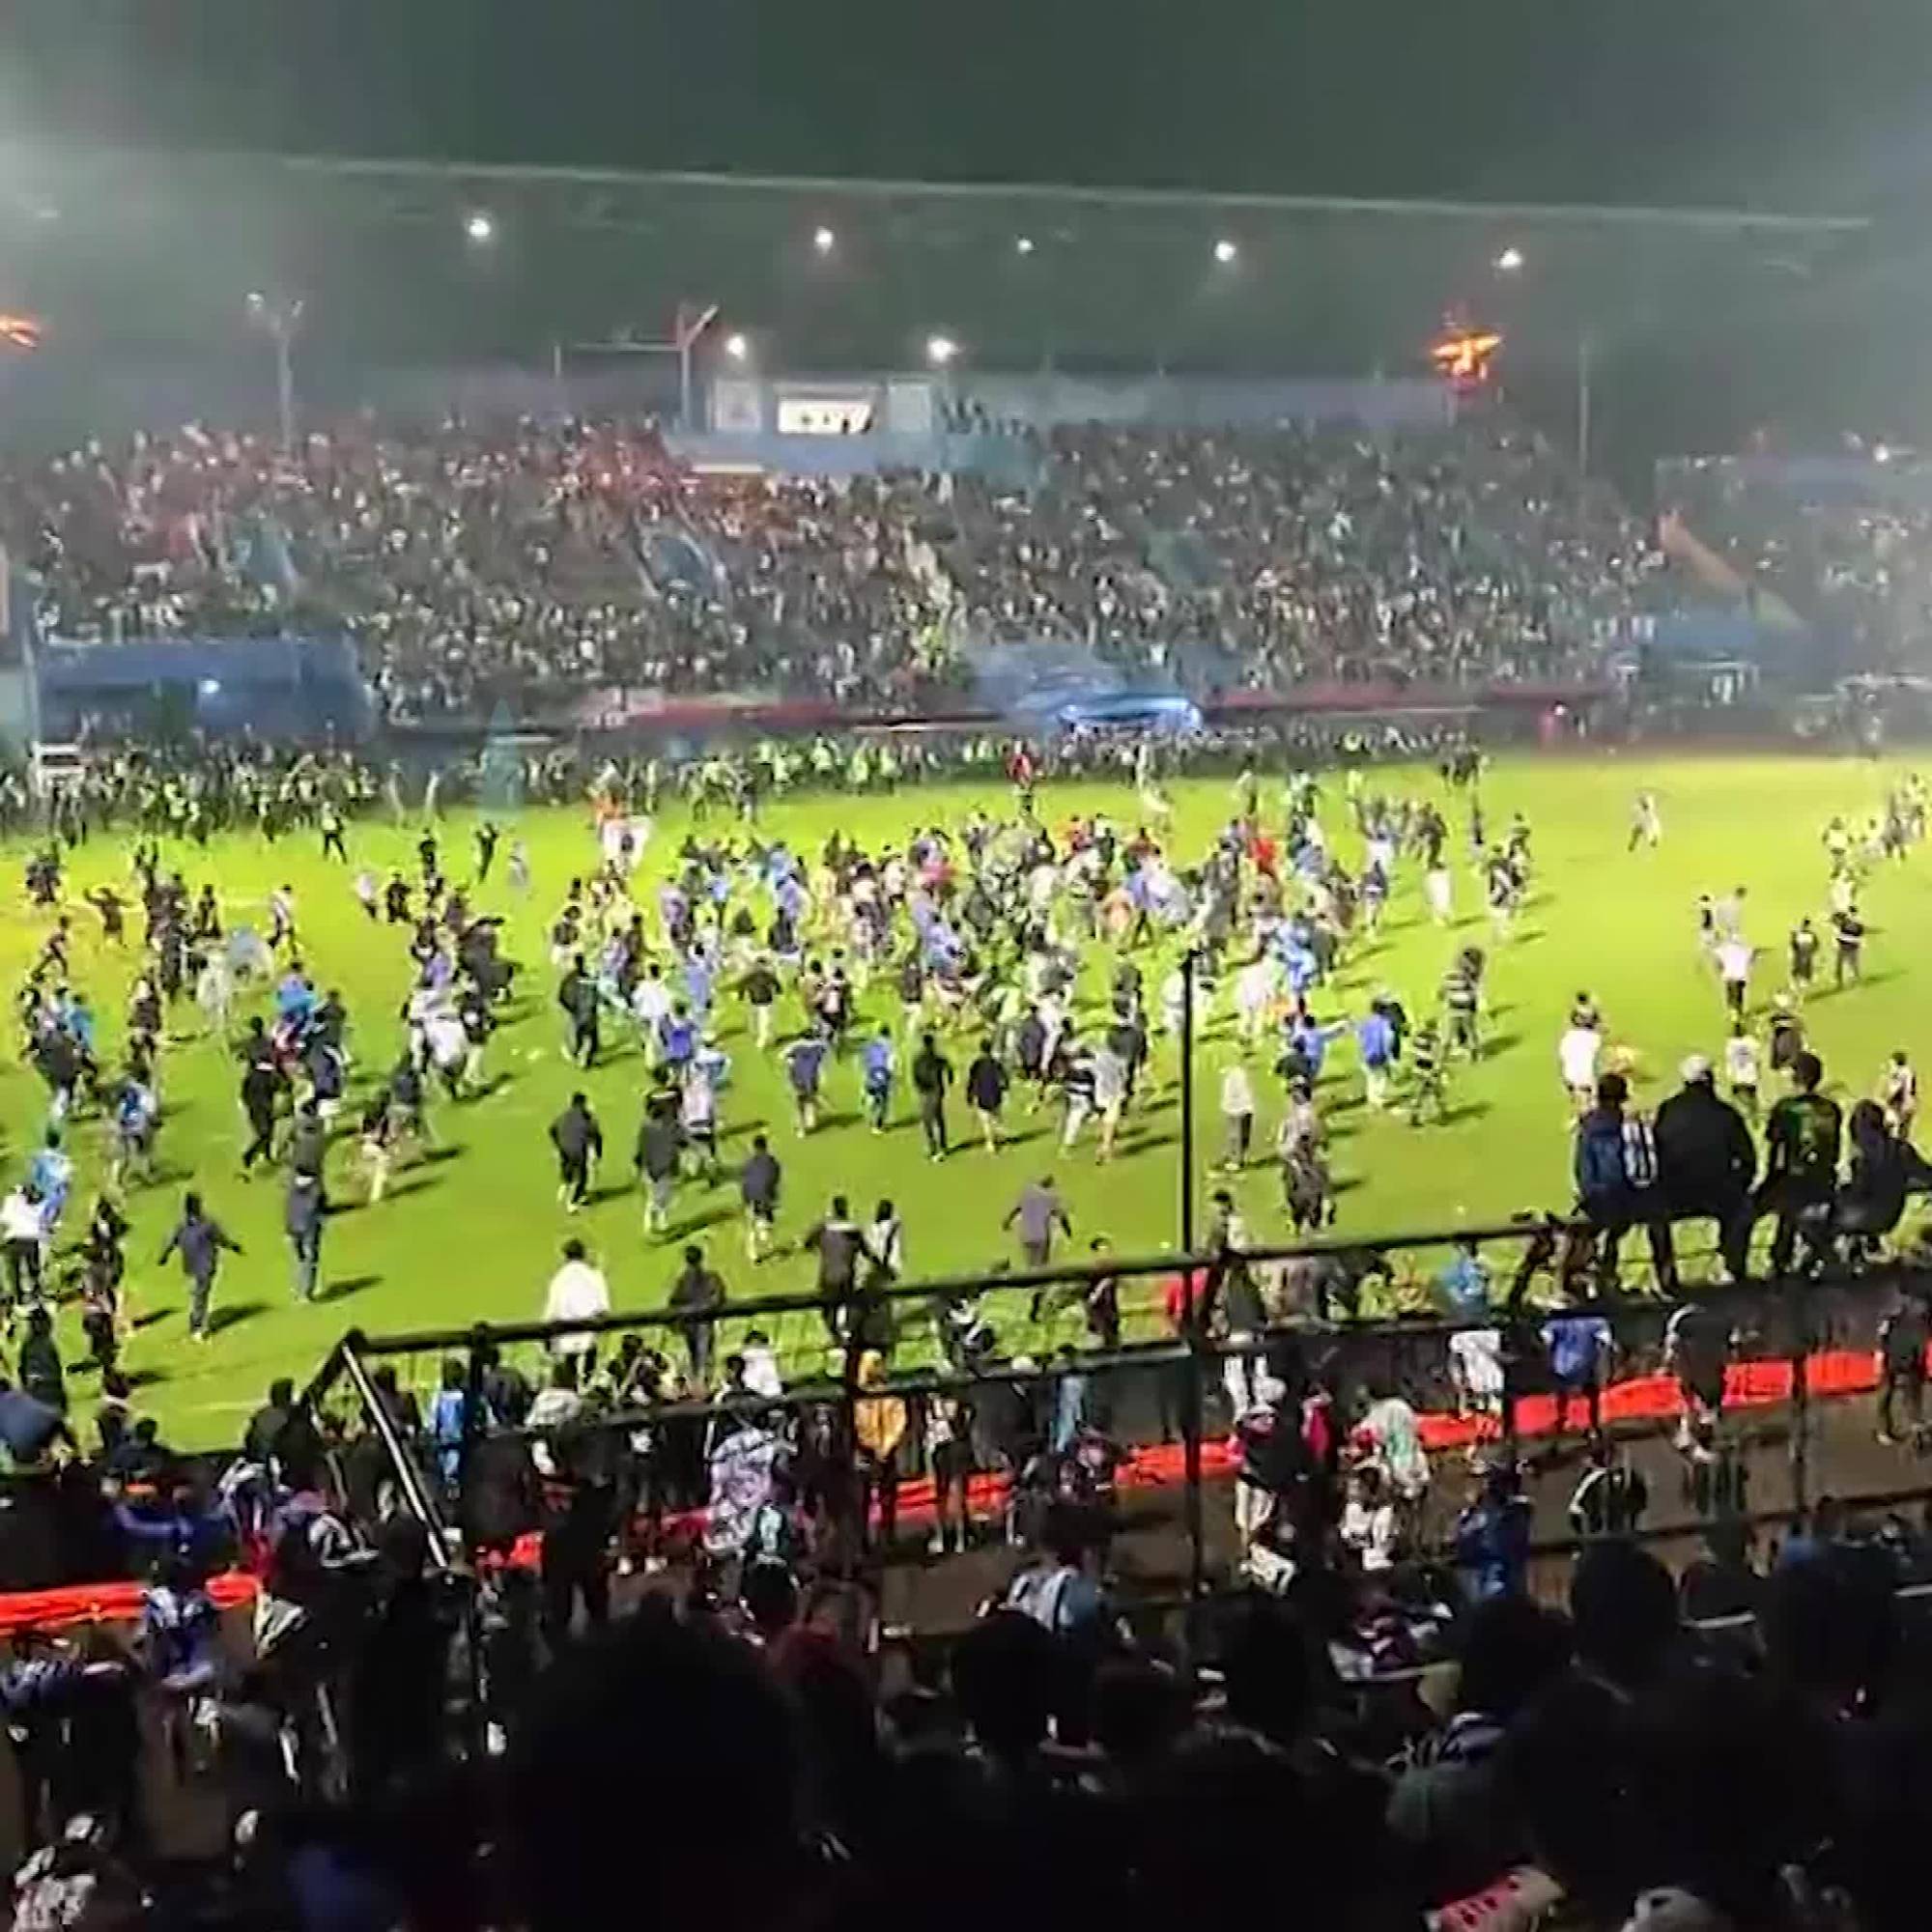 Драка на стадионе. Беспорядки на стадионе в Индонезии. Футбольный матч трибуны.